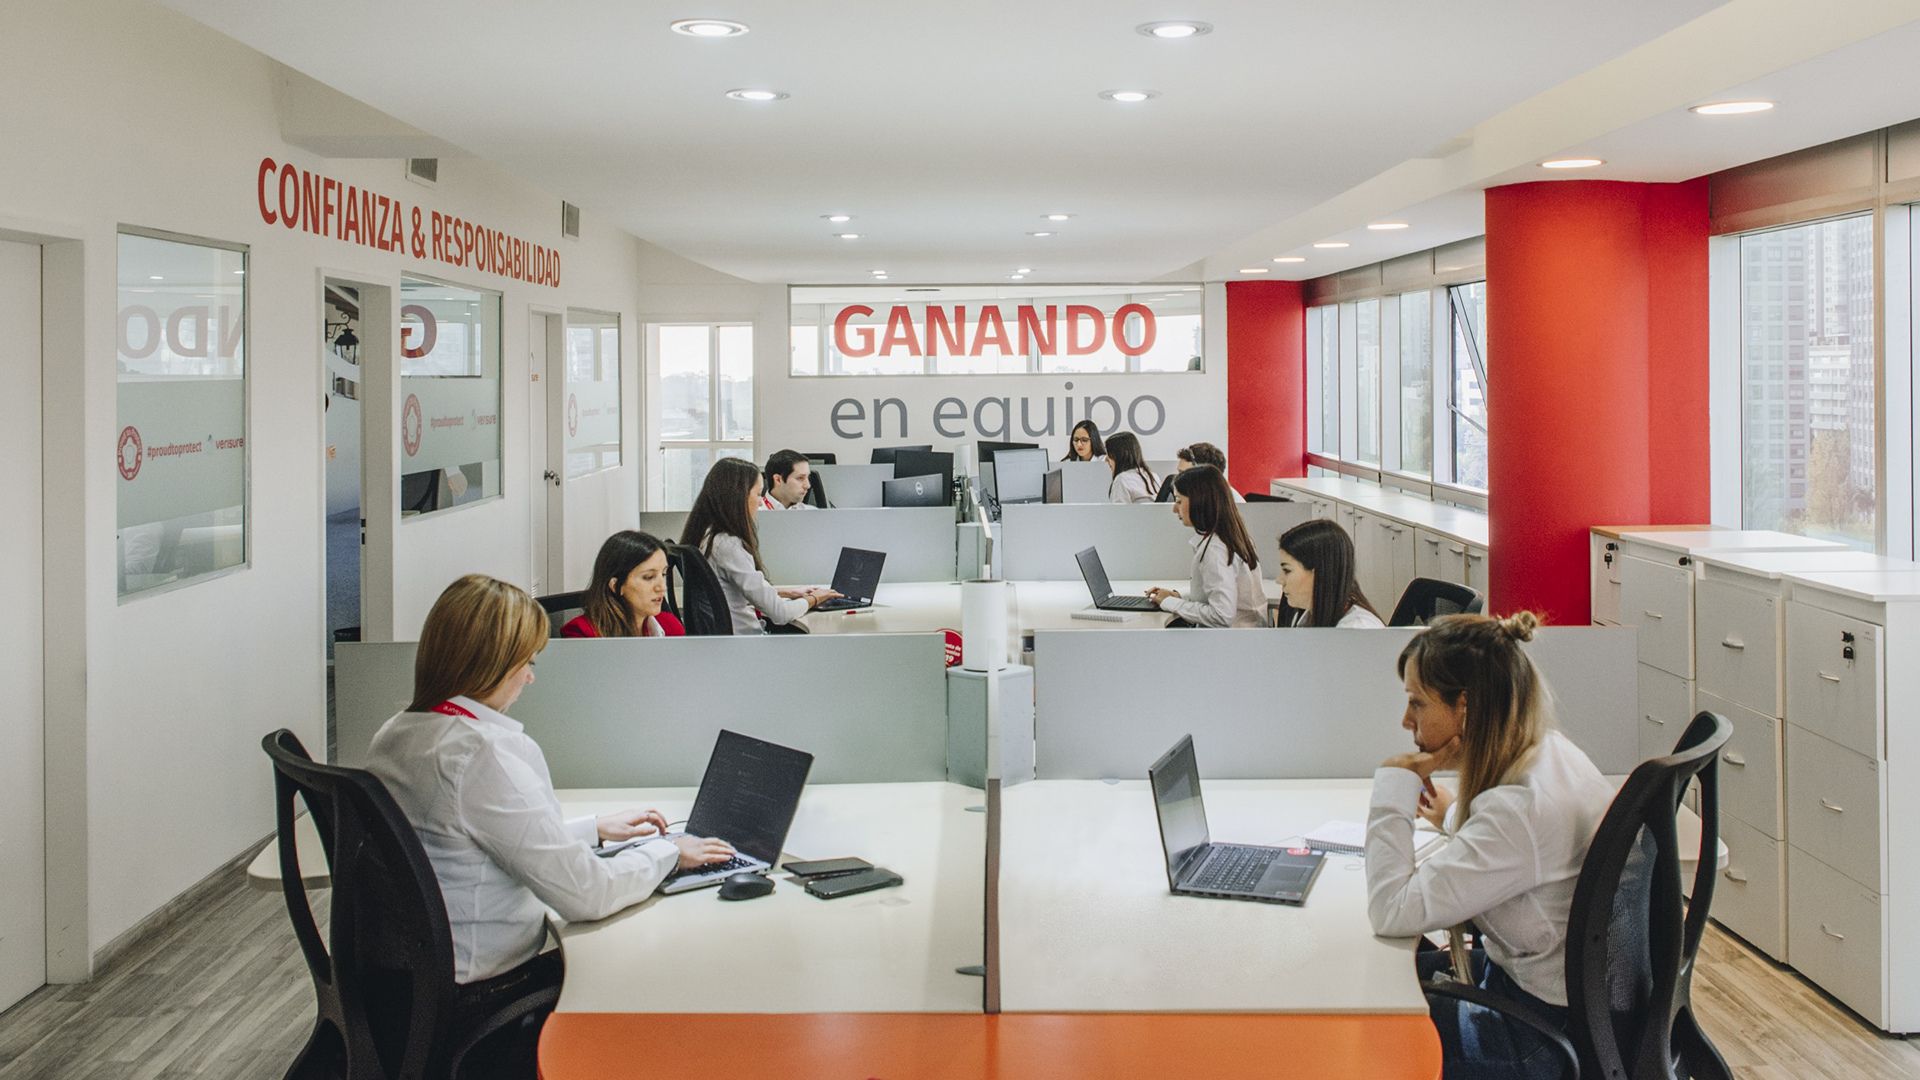 Los trabajadores eligen a los finalistas del ranking Great Place to Work (Verisure Argentina)